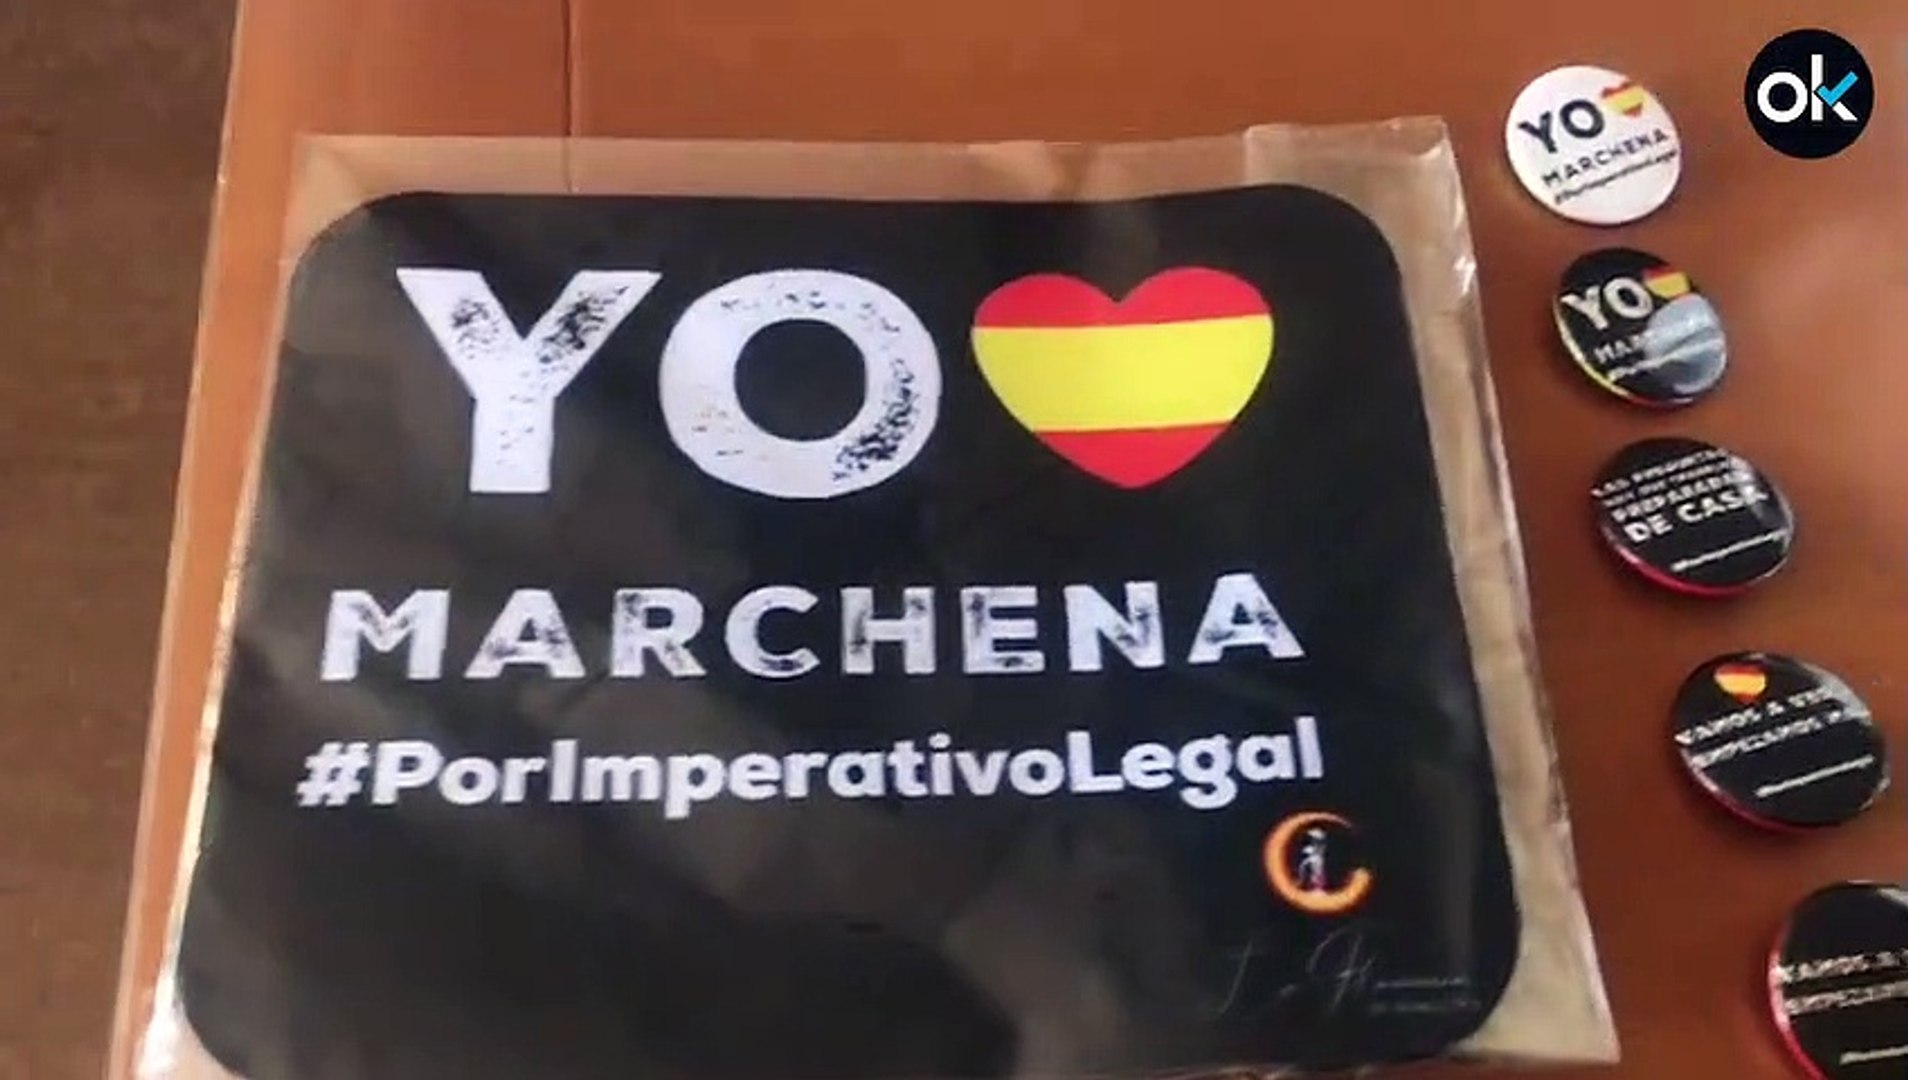 Amenazan a la empresa que fabrica las camisetas con frases del juez Marchena  - Vídeo Dailymotion